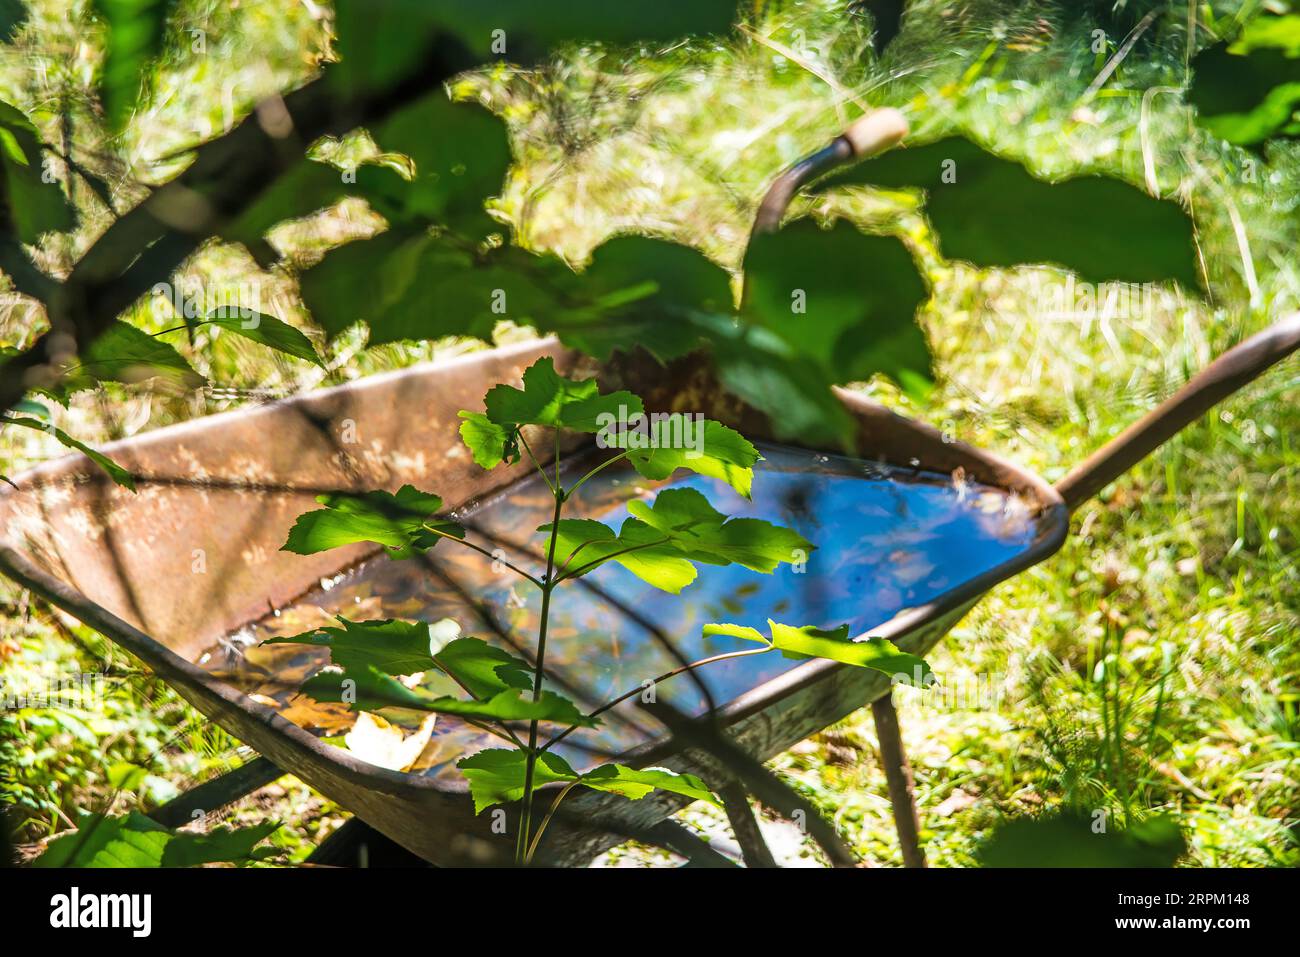 hidden wheelbarrow with water in a garden Stock Photo